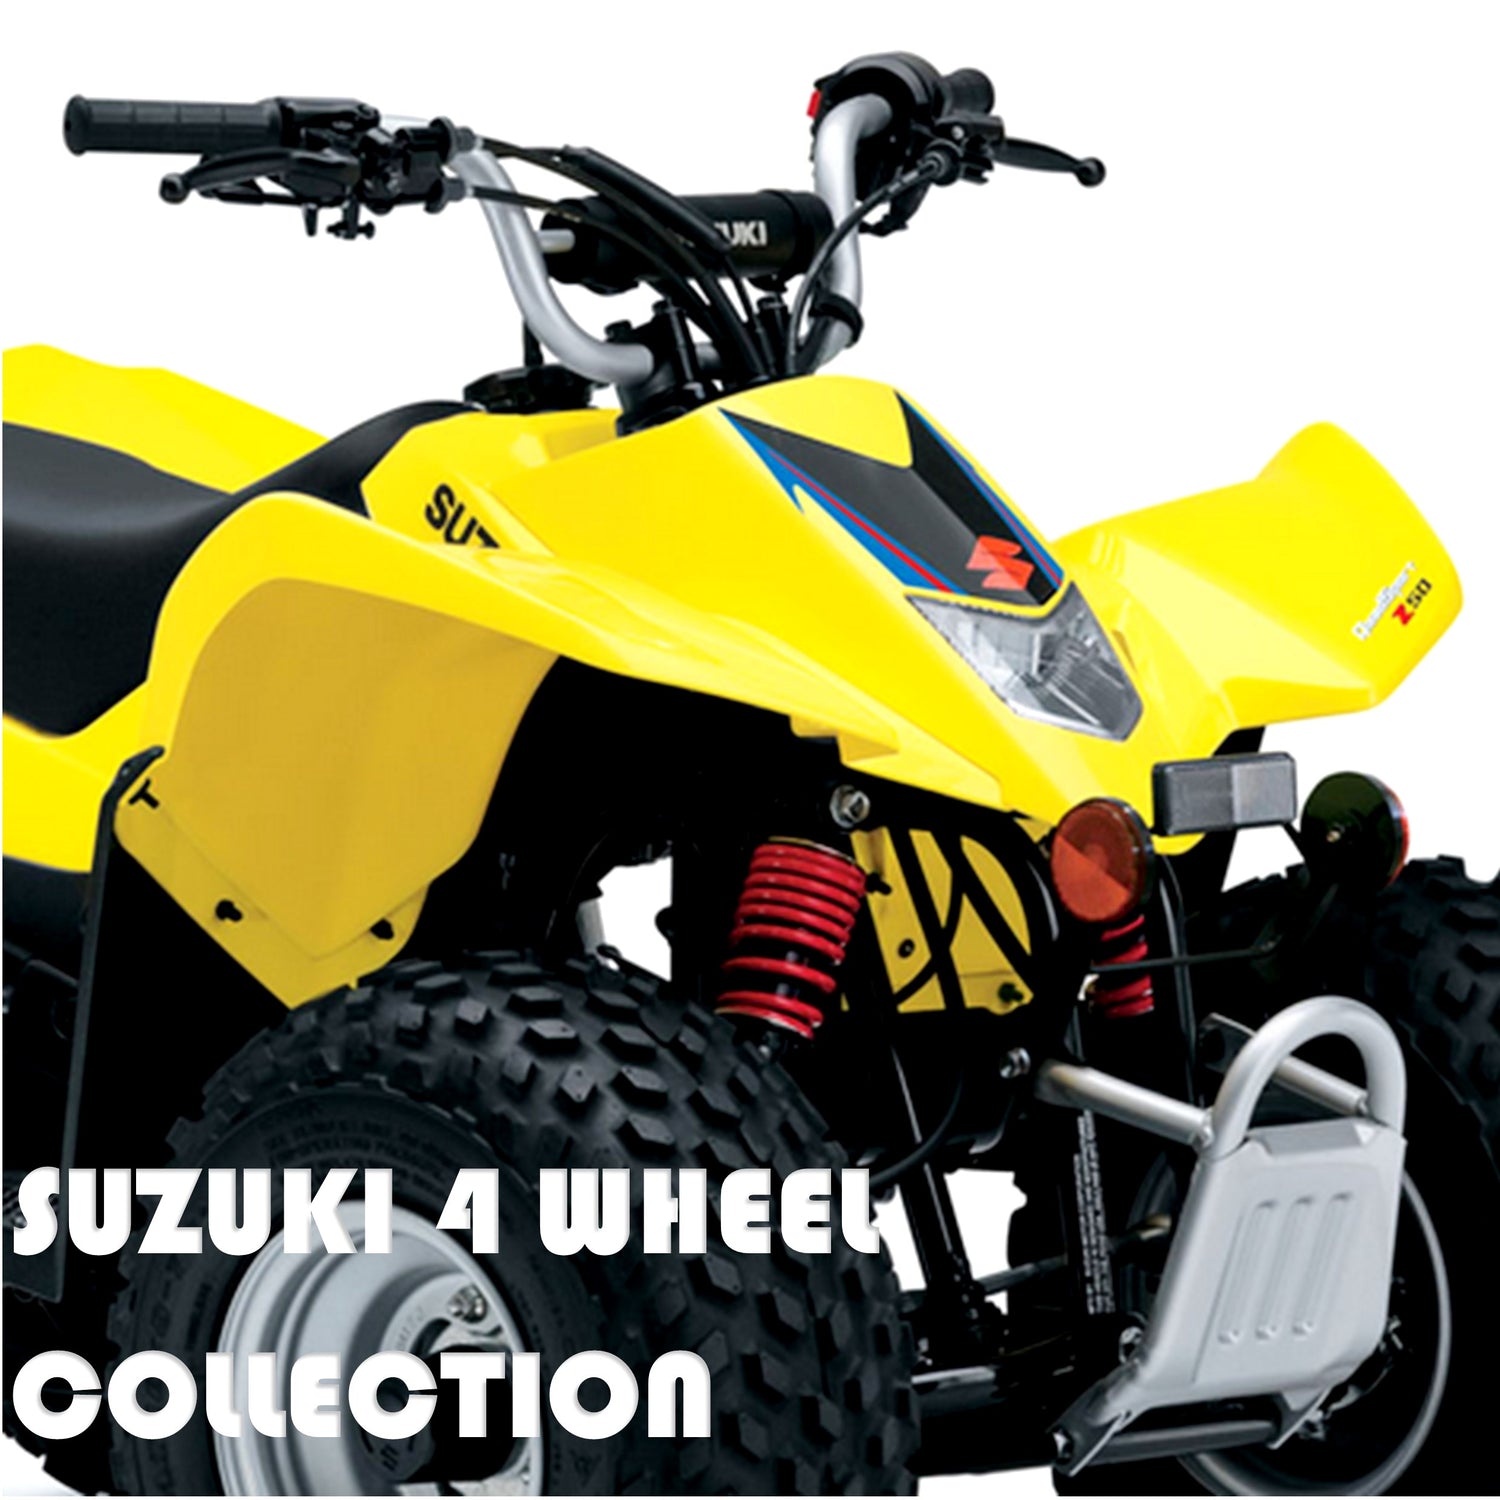 All Suzuki 4 Wheel